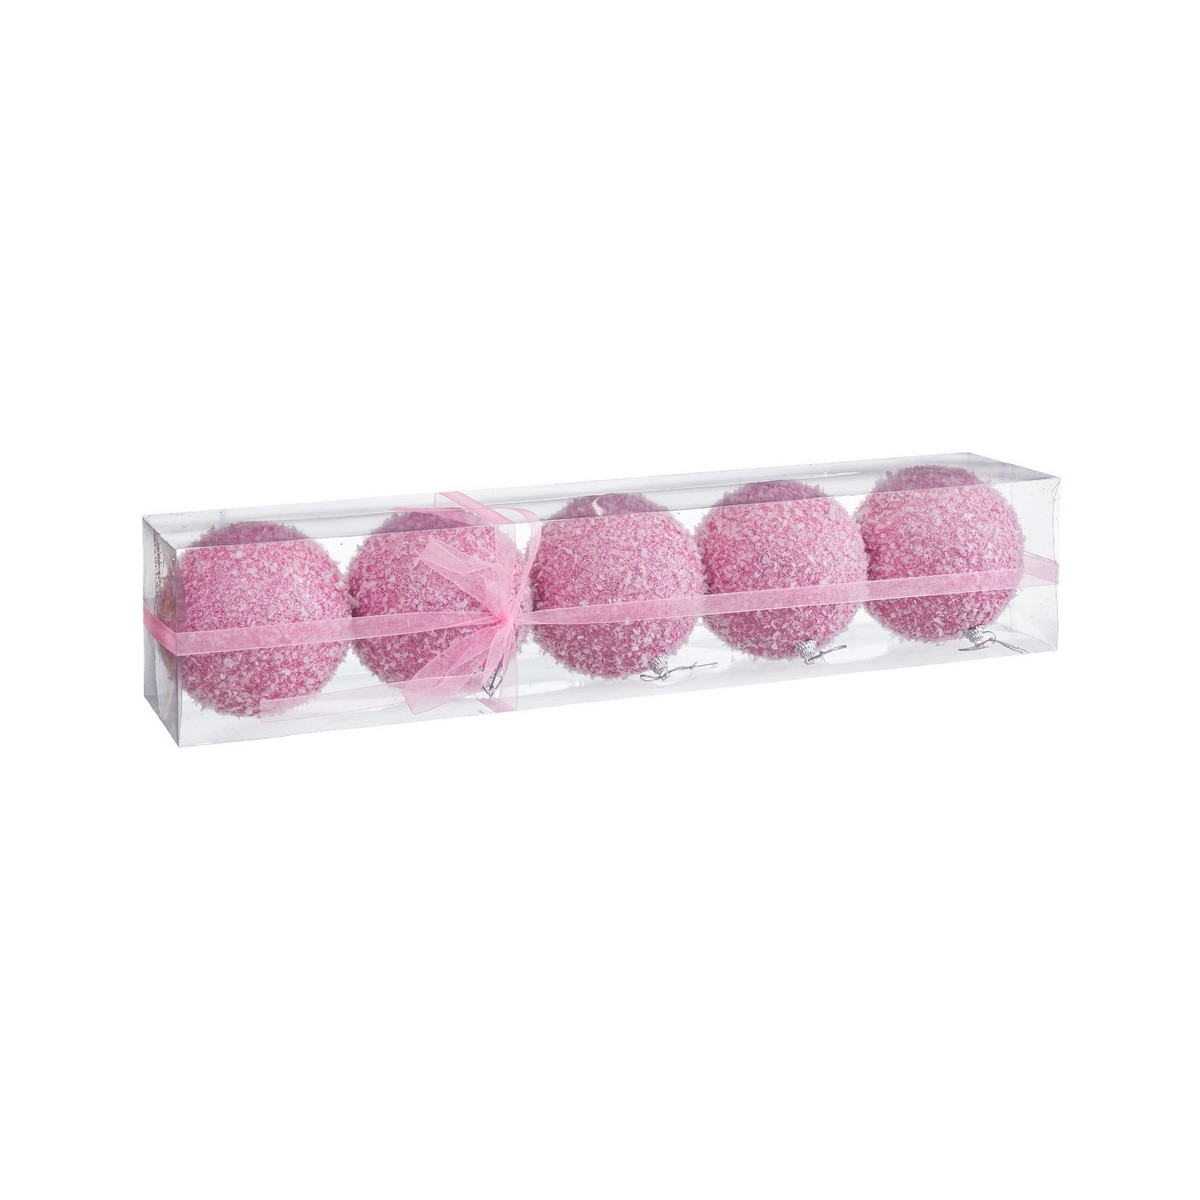 S 5 bolas de espuma rosa 10 x 10 x 10 cm